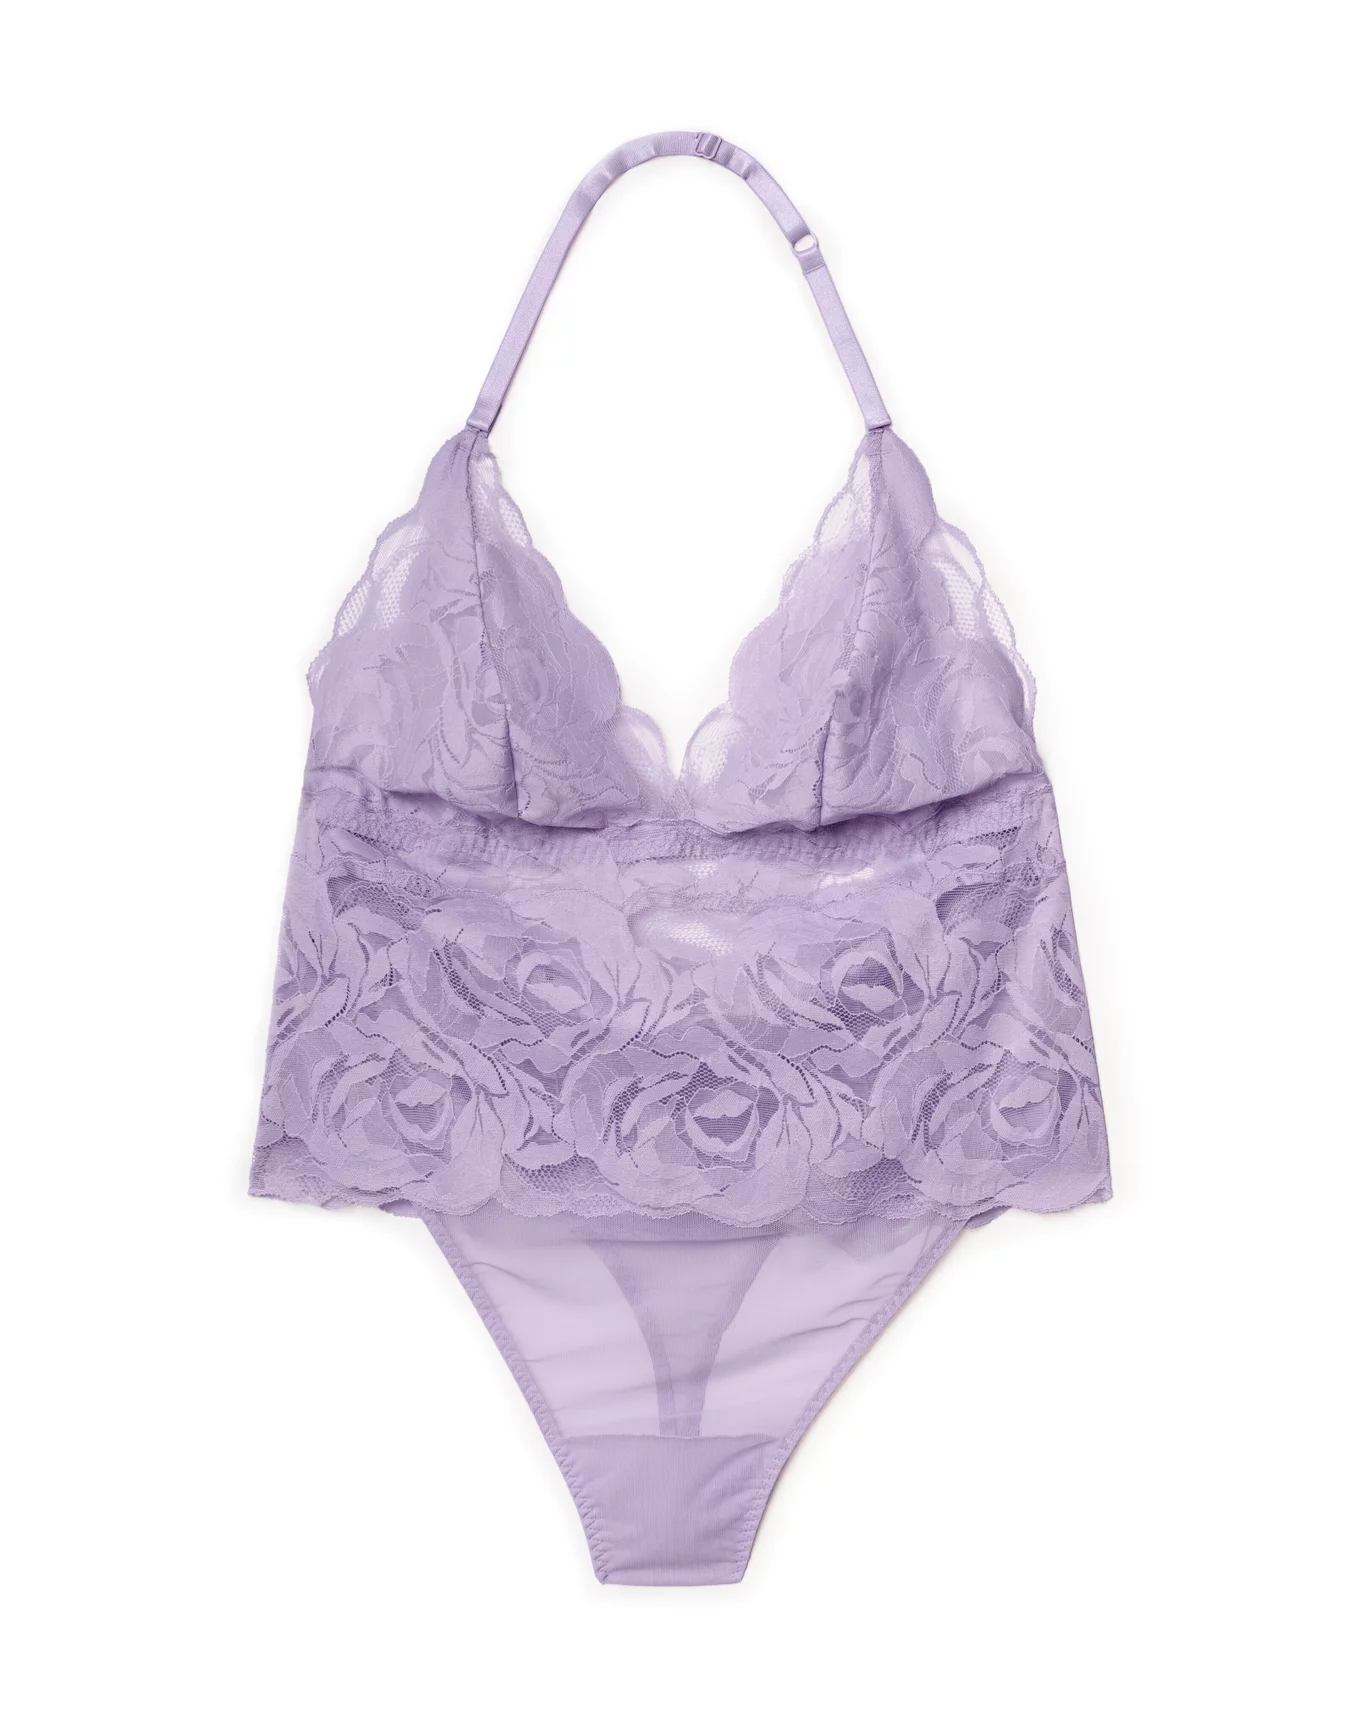 Not Your Sweetie Lace Bustier Bodysuit (Lavender) · NanaMacs